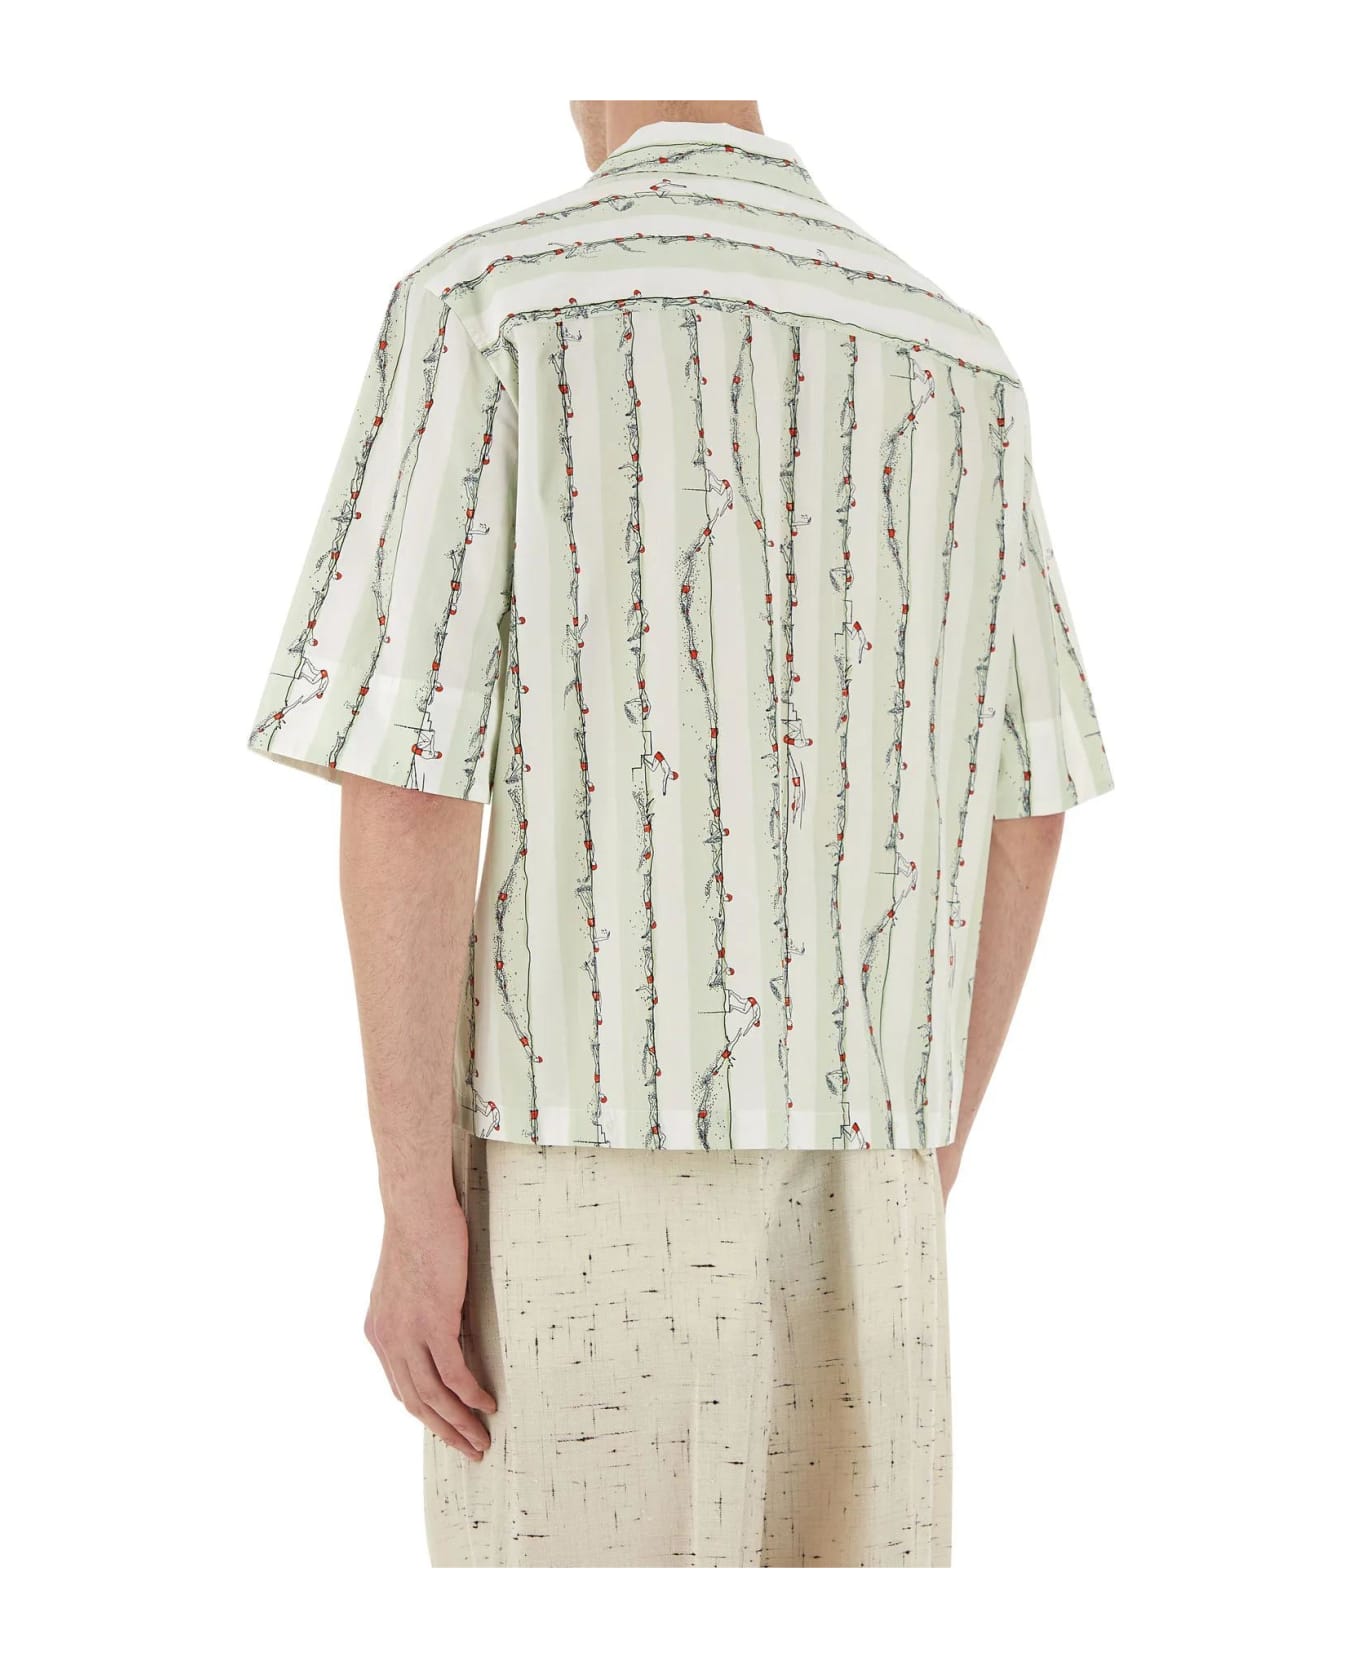 Bottega Veneta Embroidered Poplin Shirt シャツ